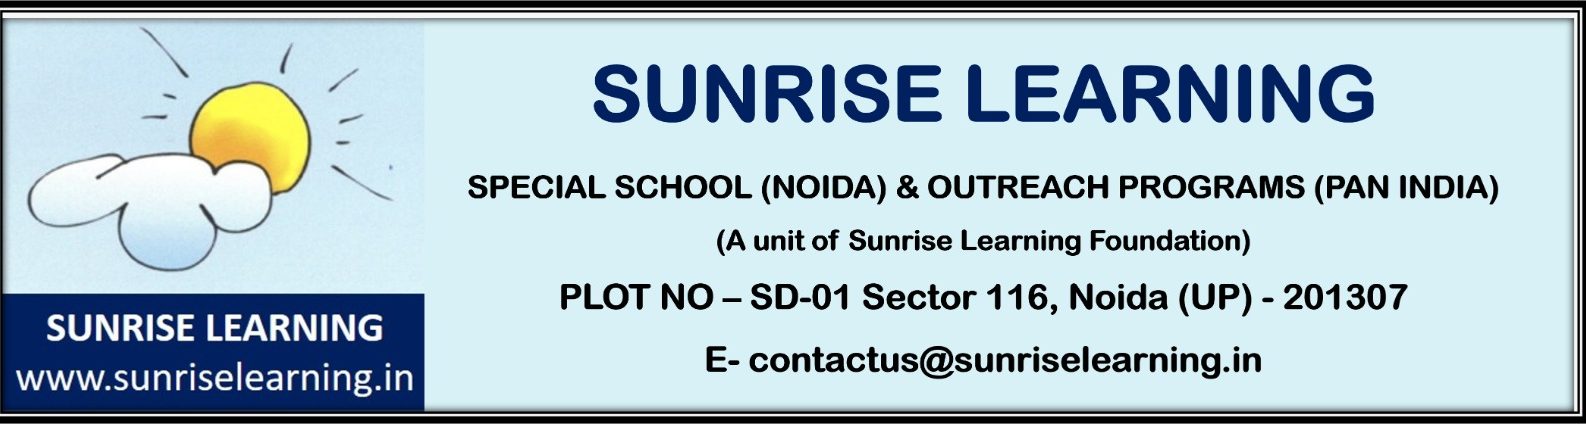 Sunrise Learning Foundation